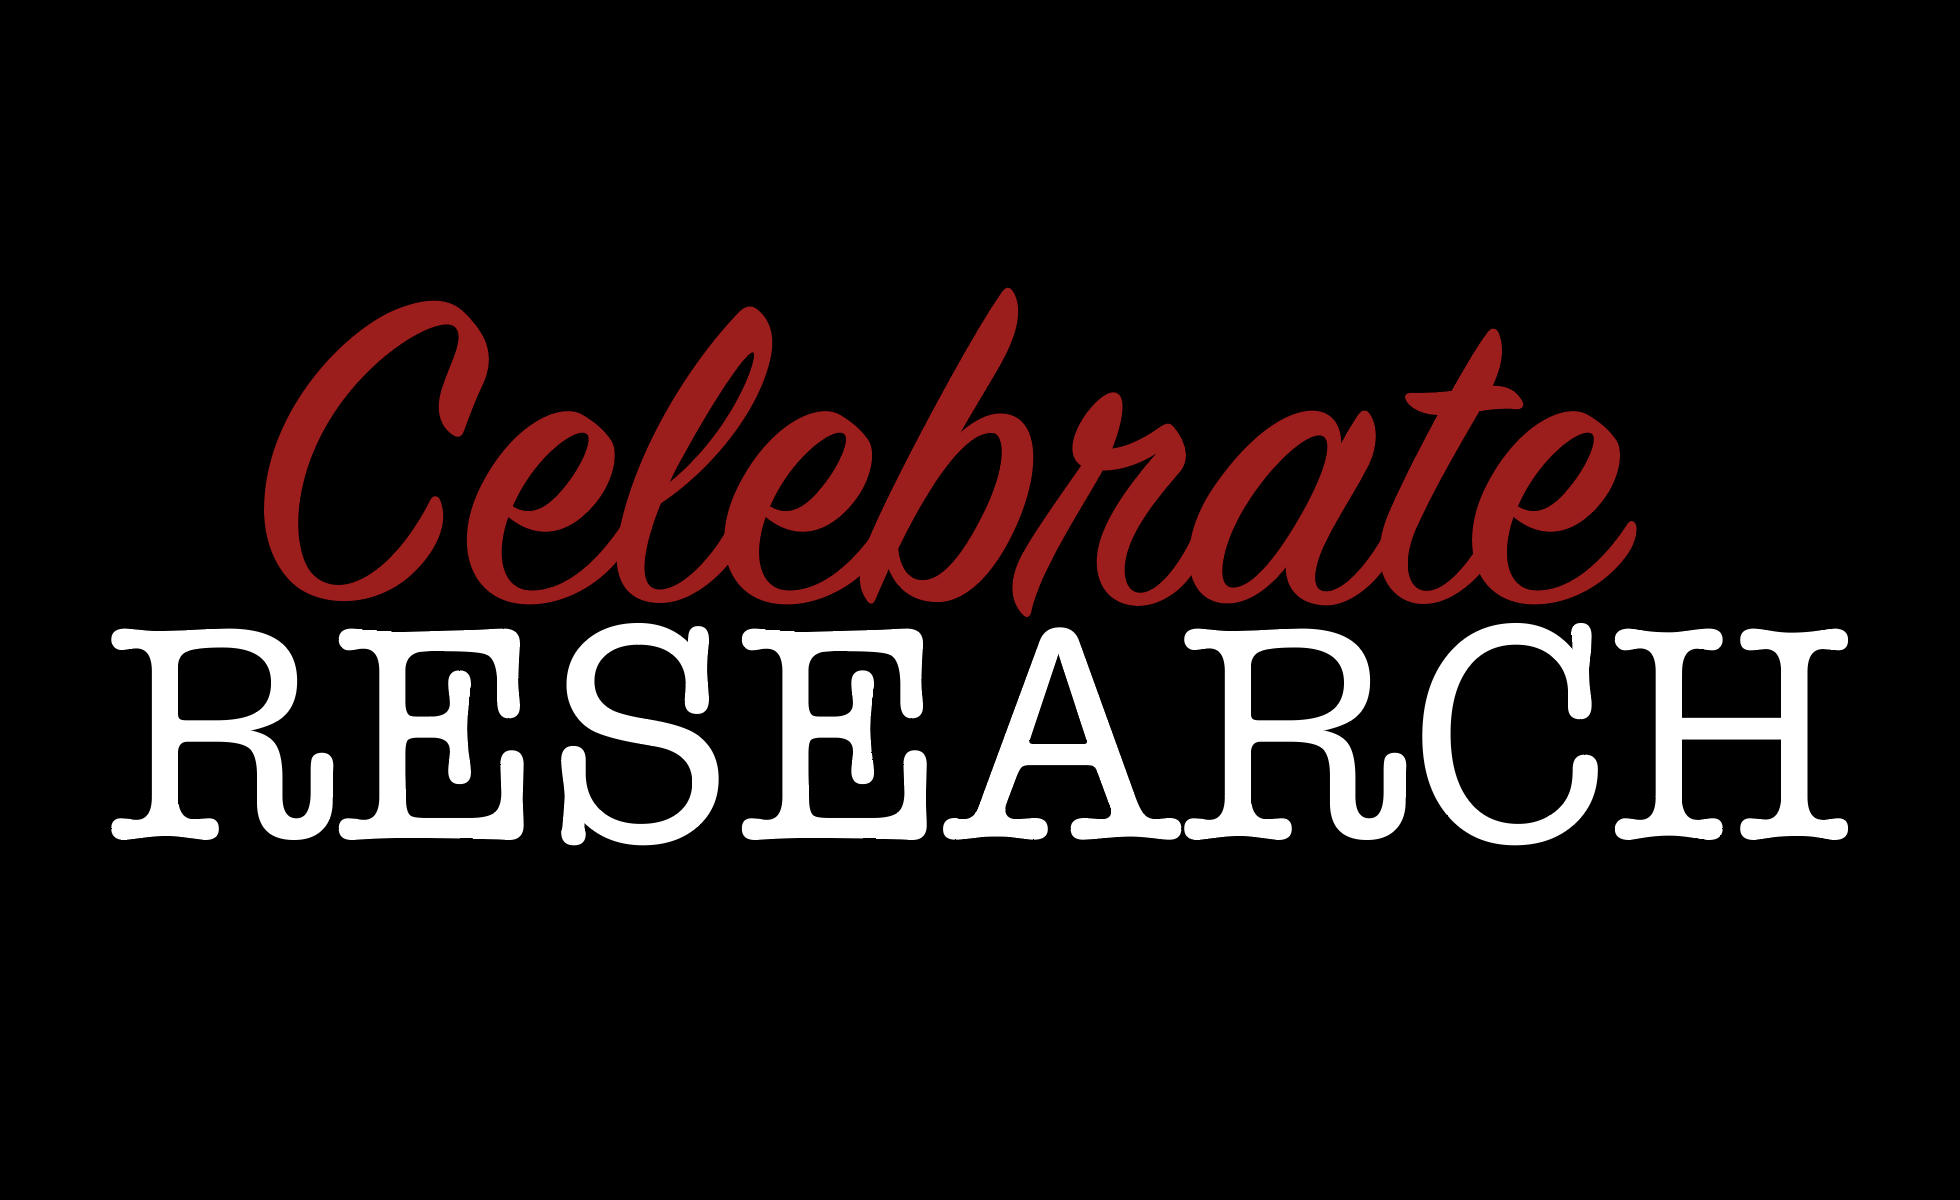 Celebrate research graphic, black white red.